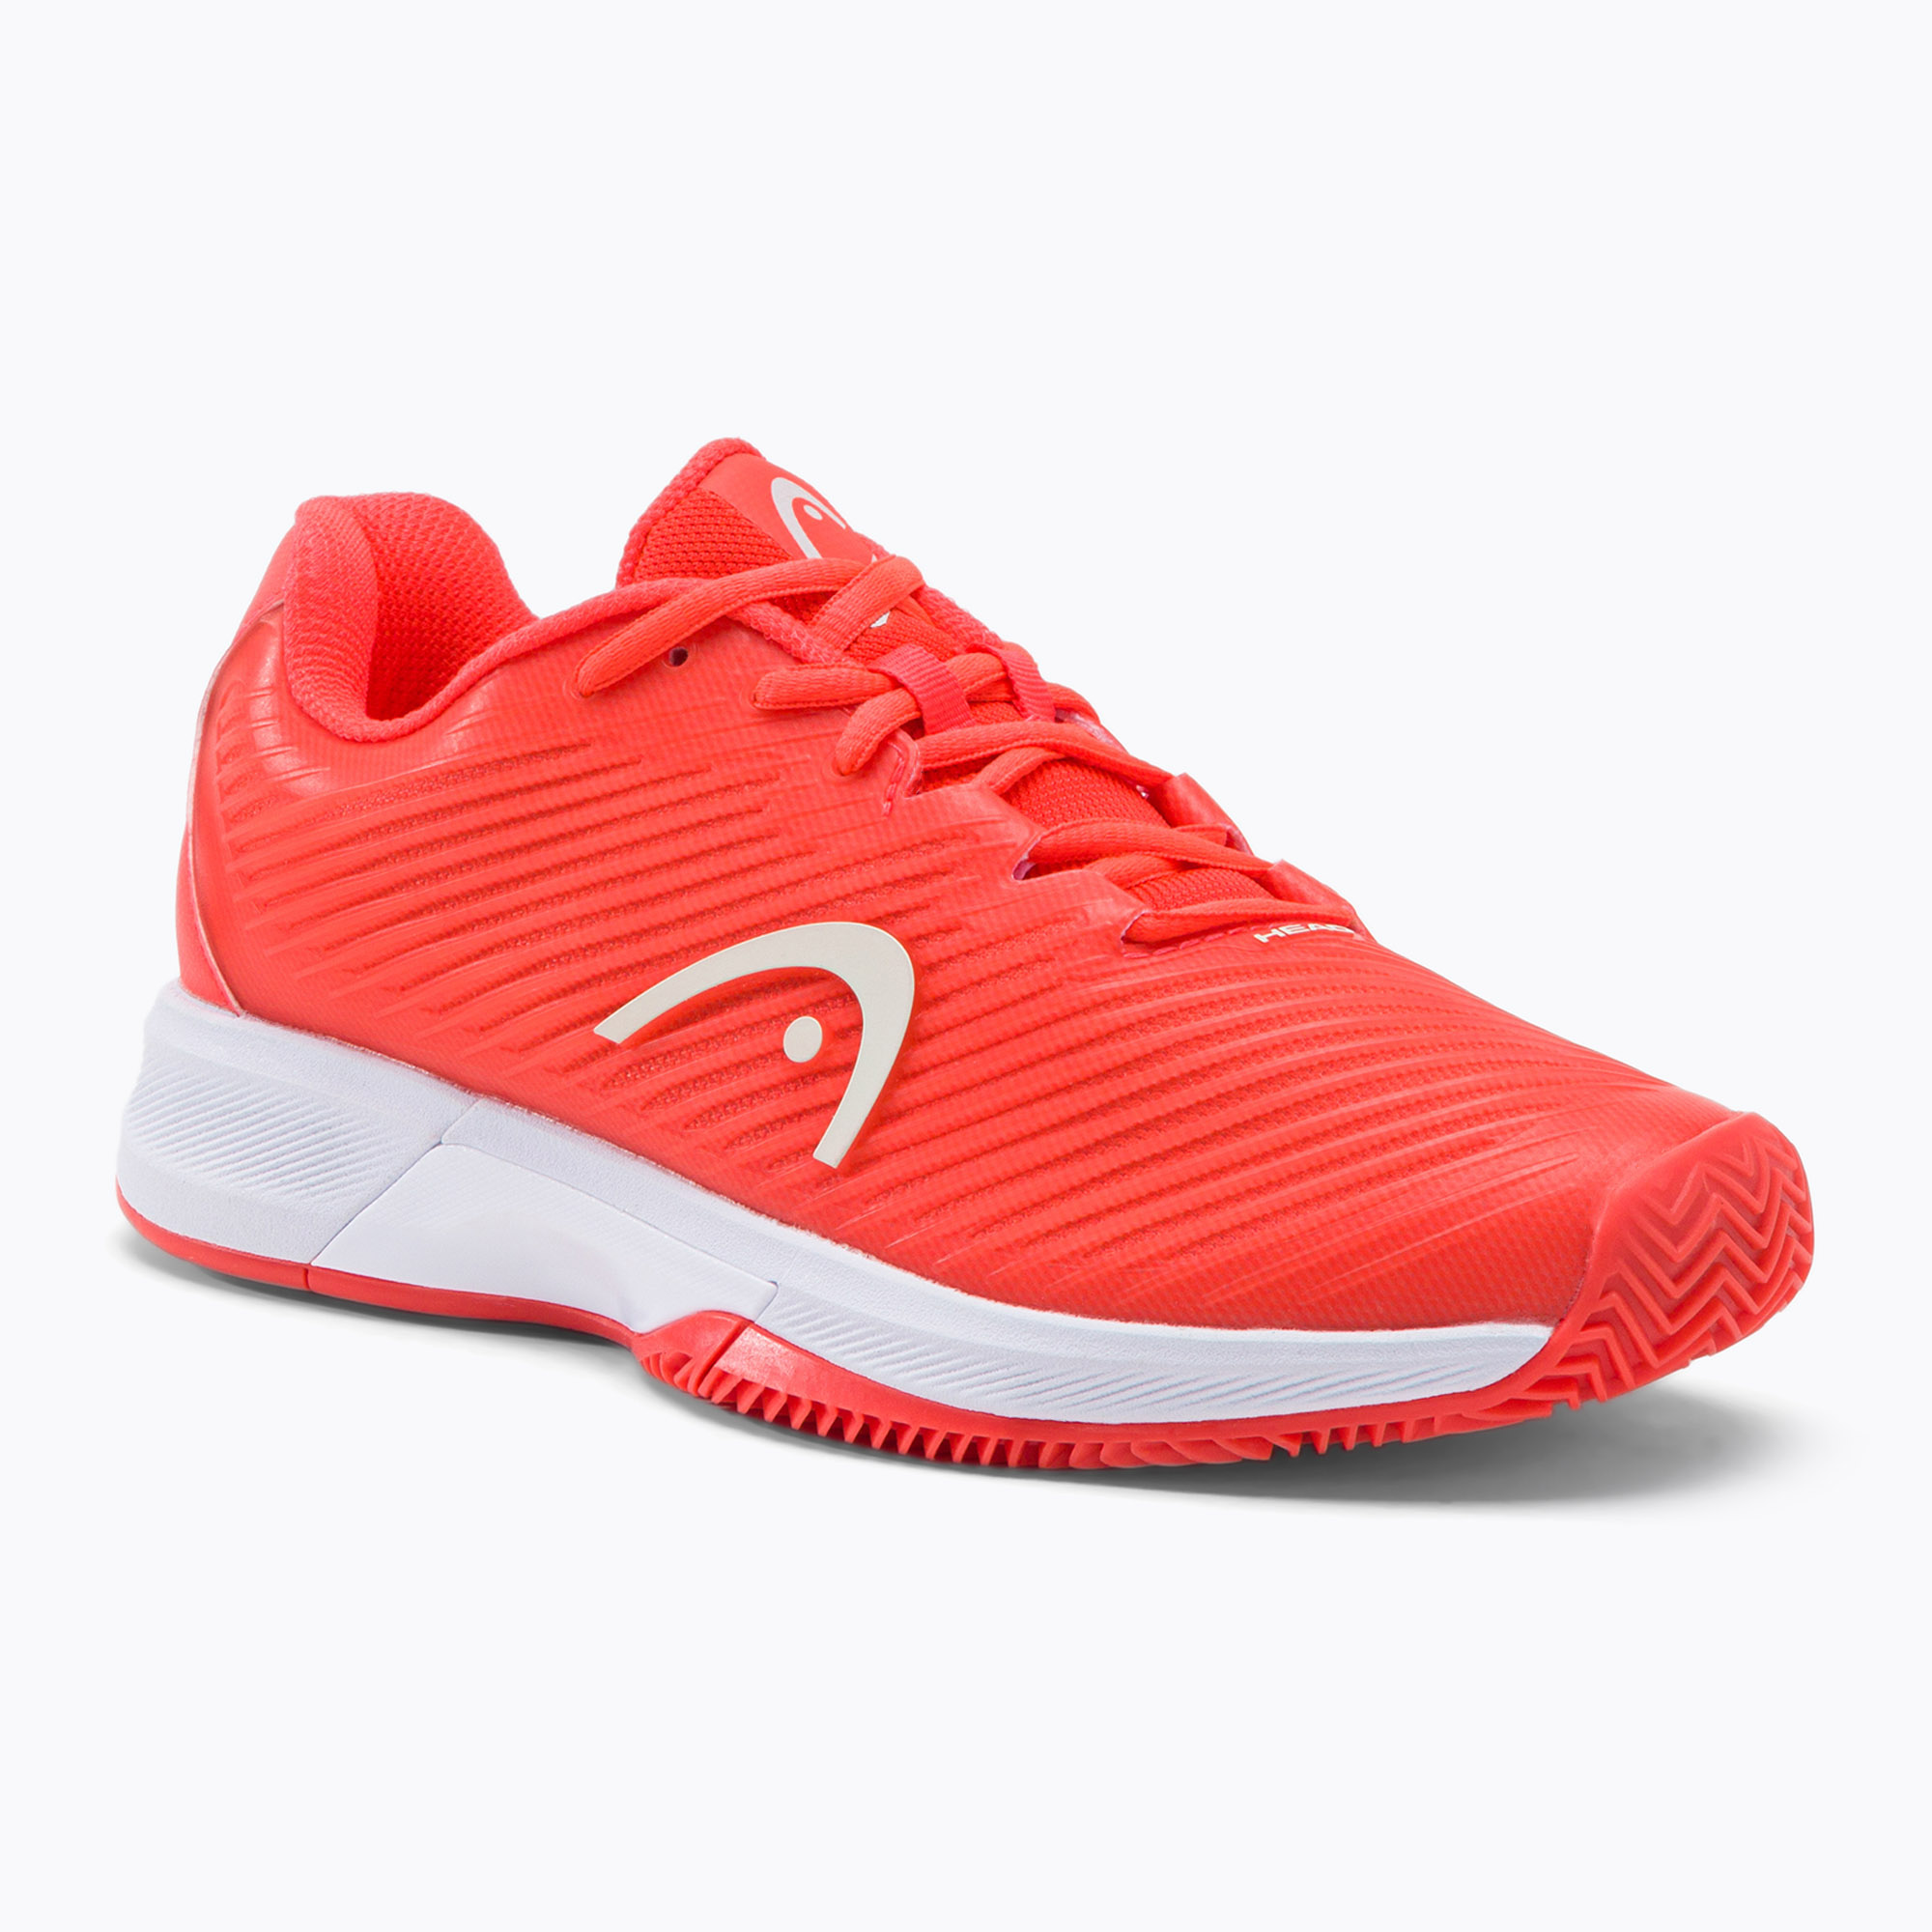 Pantofi de tenis pentru femei HEAD Revolt Pro 4.0 Clay orange 274132